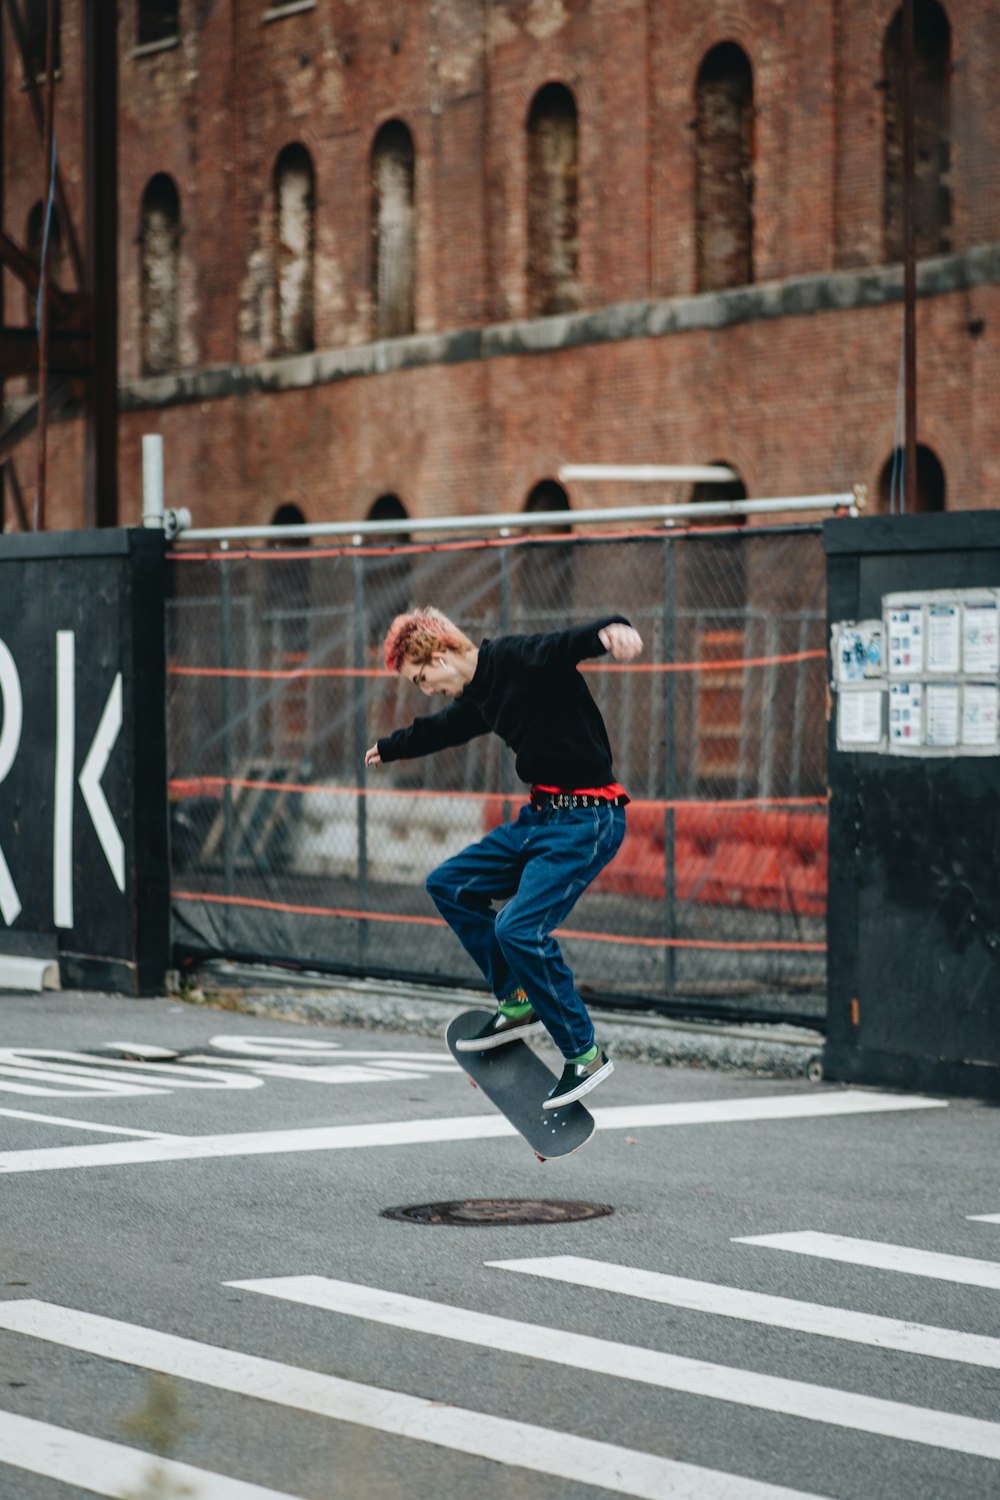 a young man riding a skateboard through the air